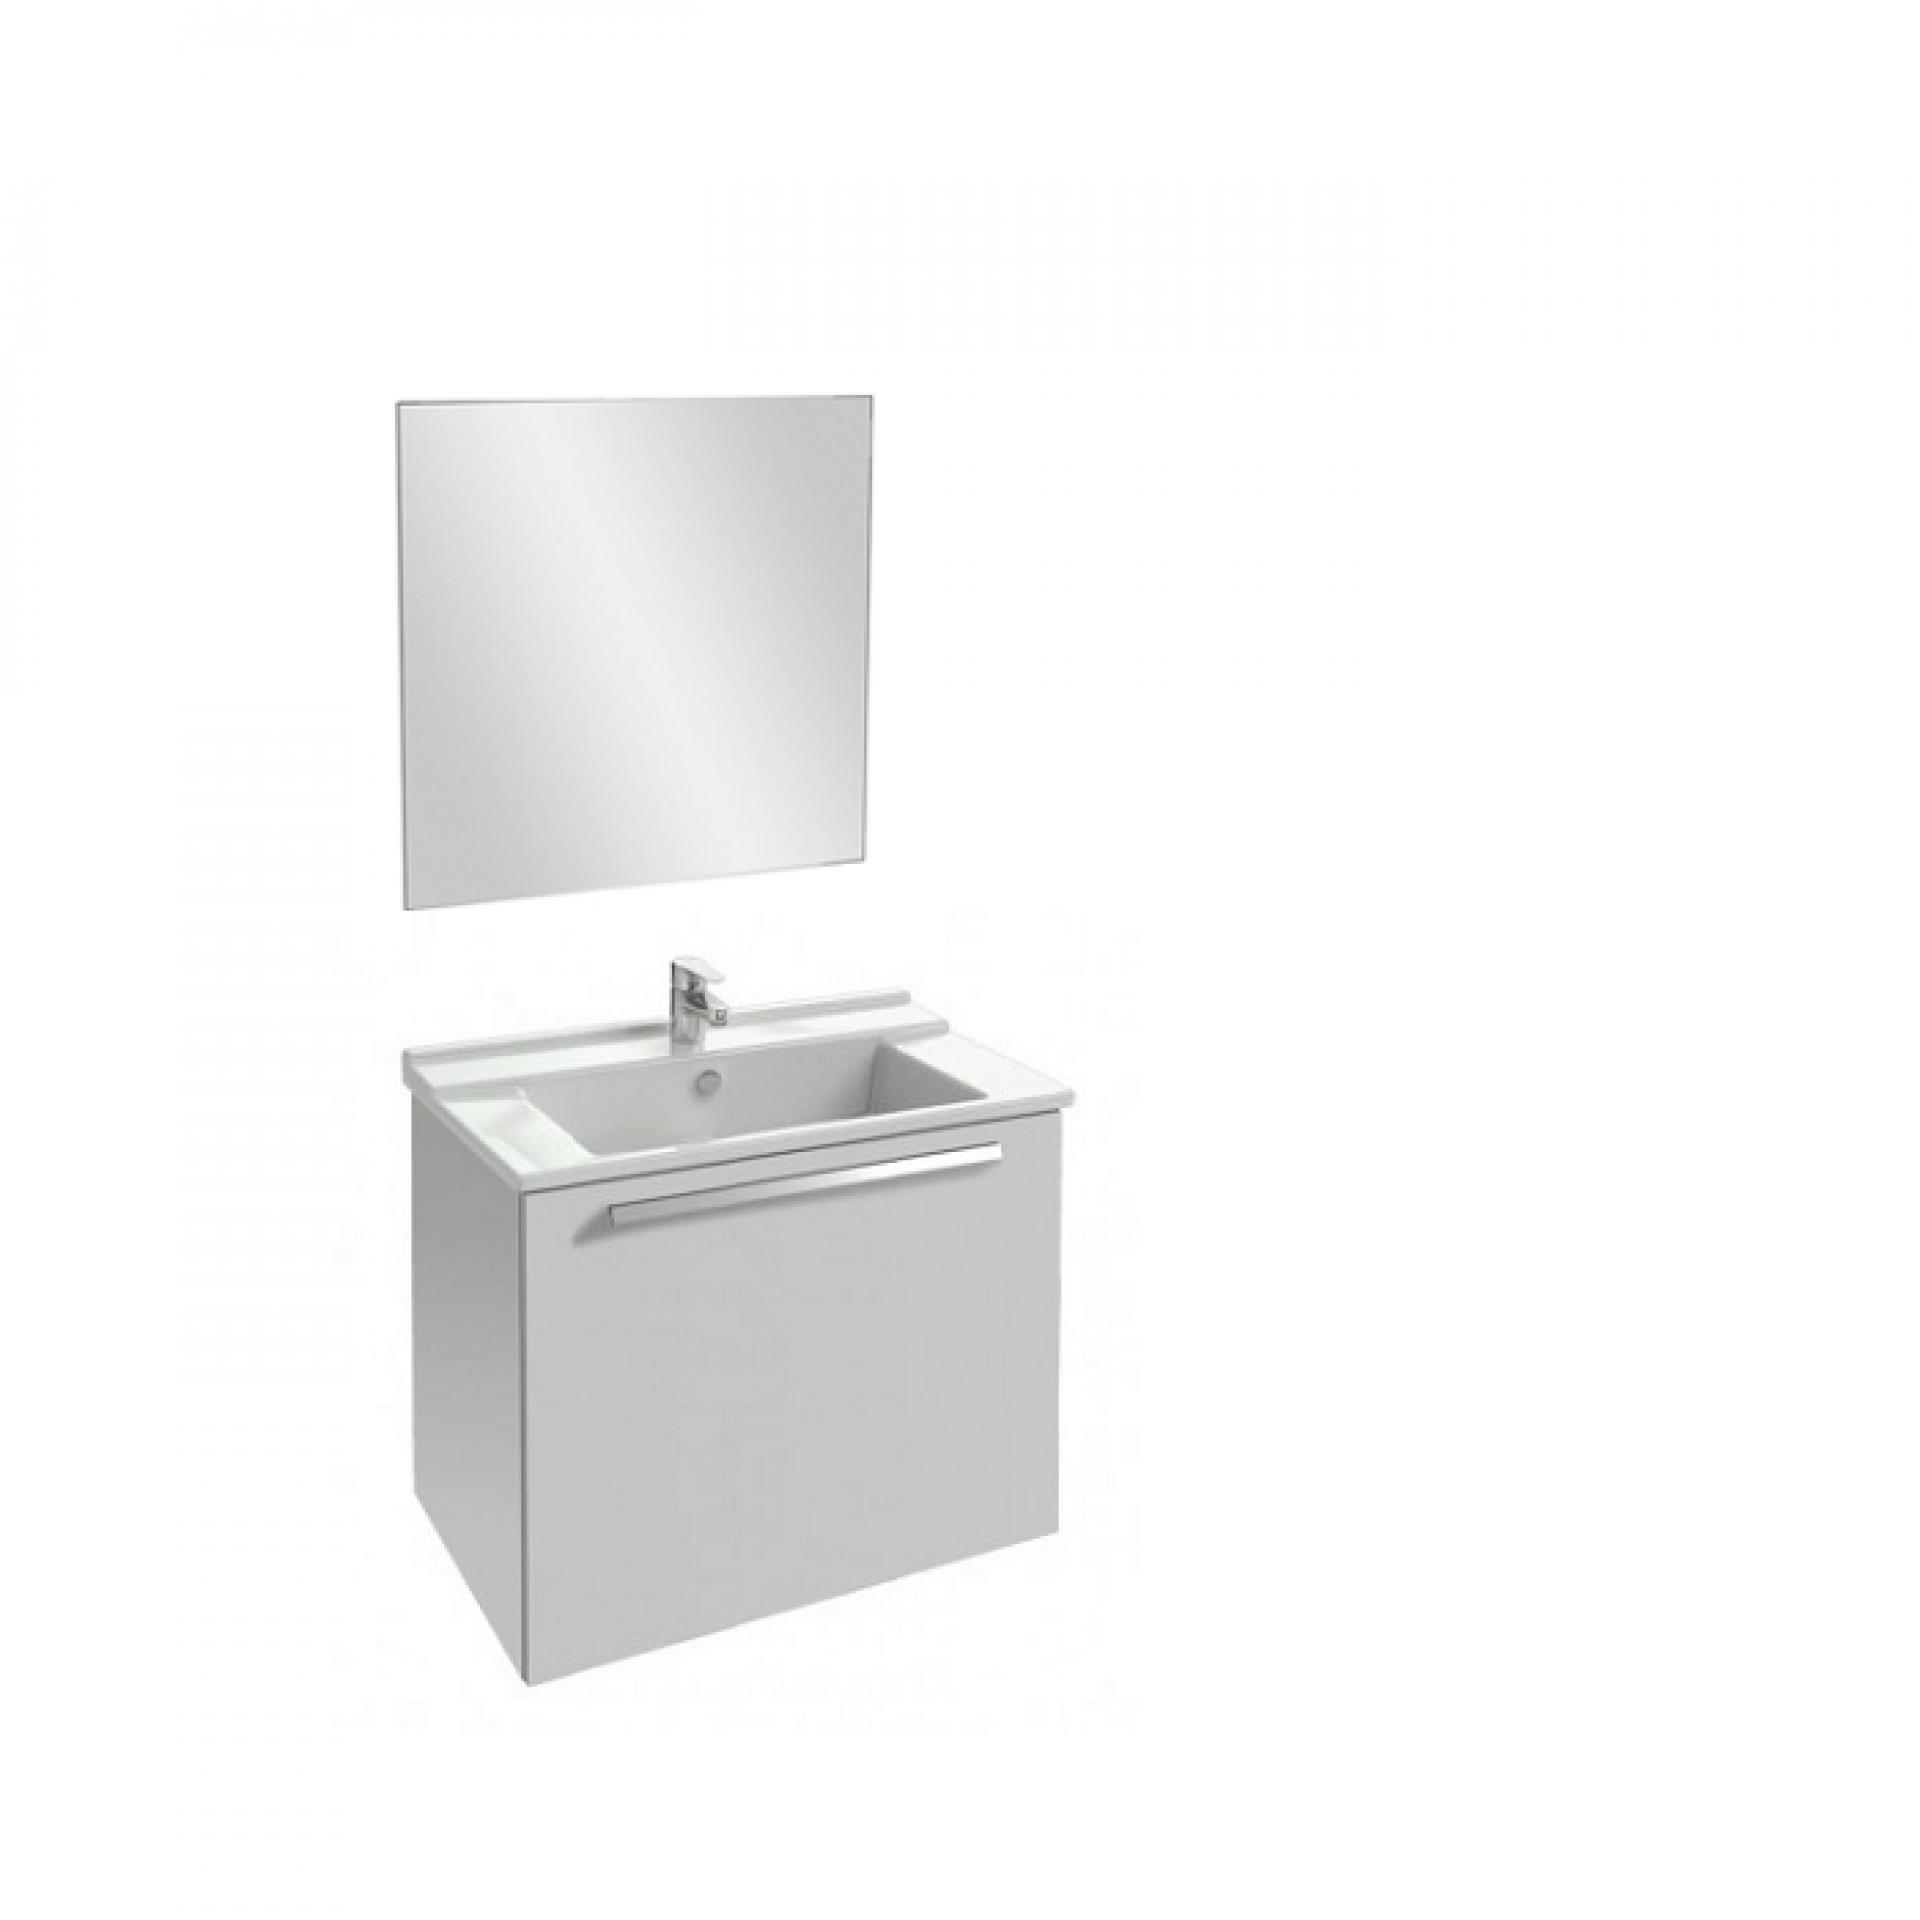 Комплект мебели 60 см Jacob Delafon Struktura с раковиной EXI112-00, тумбой EB1284-N18, зеркалом EB1080-NF, белый блестящий